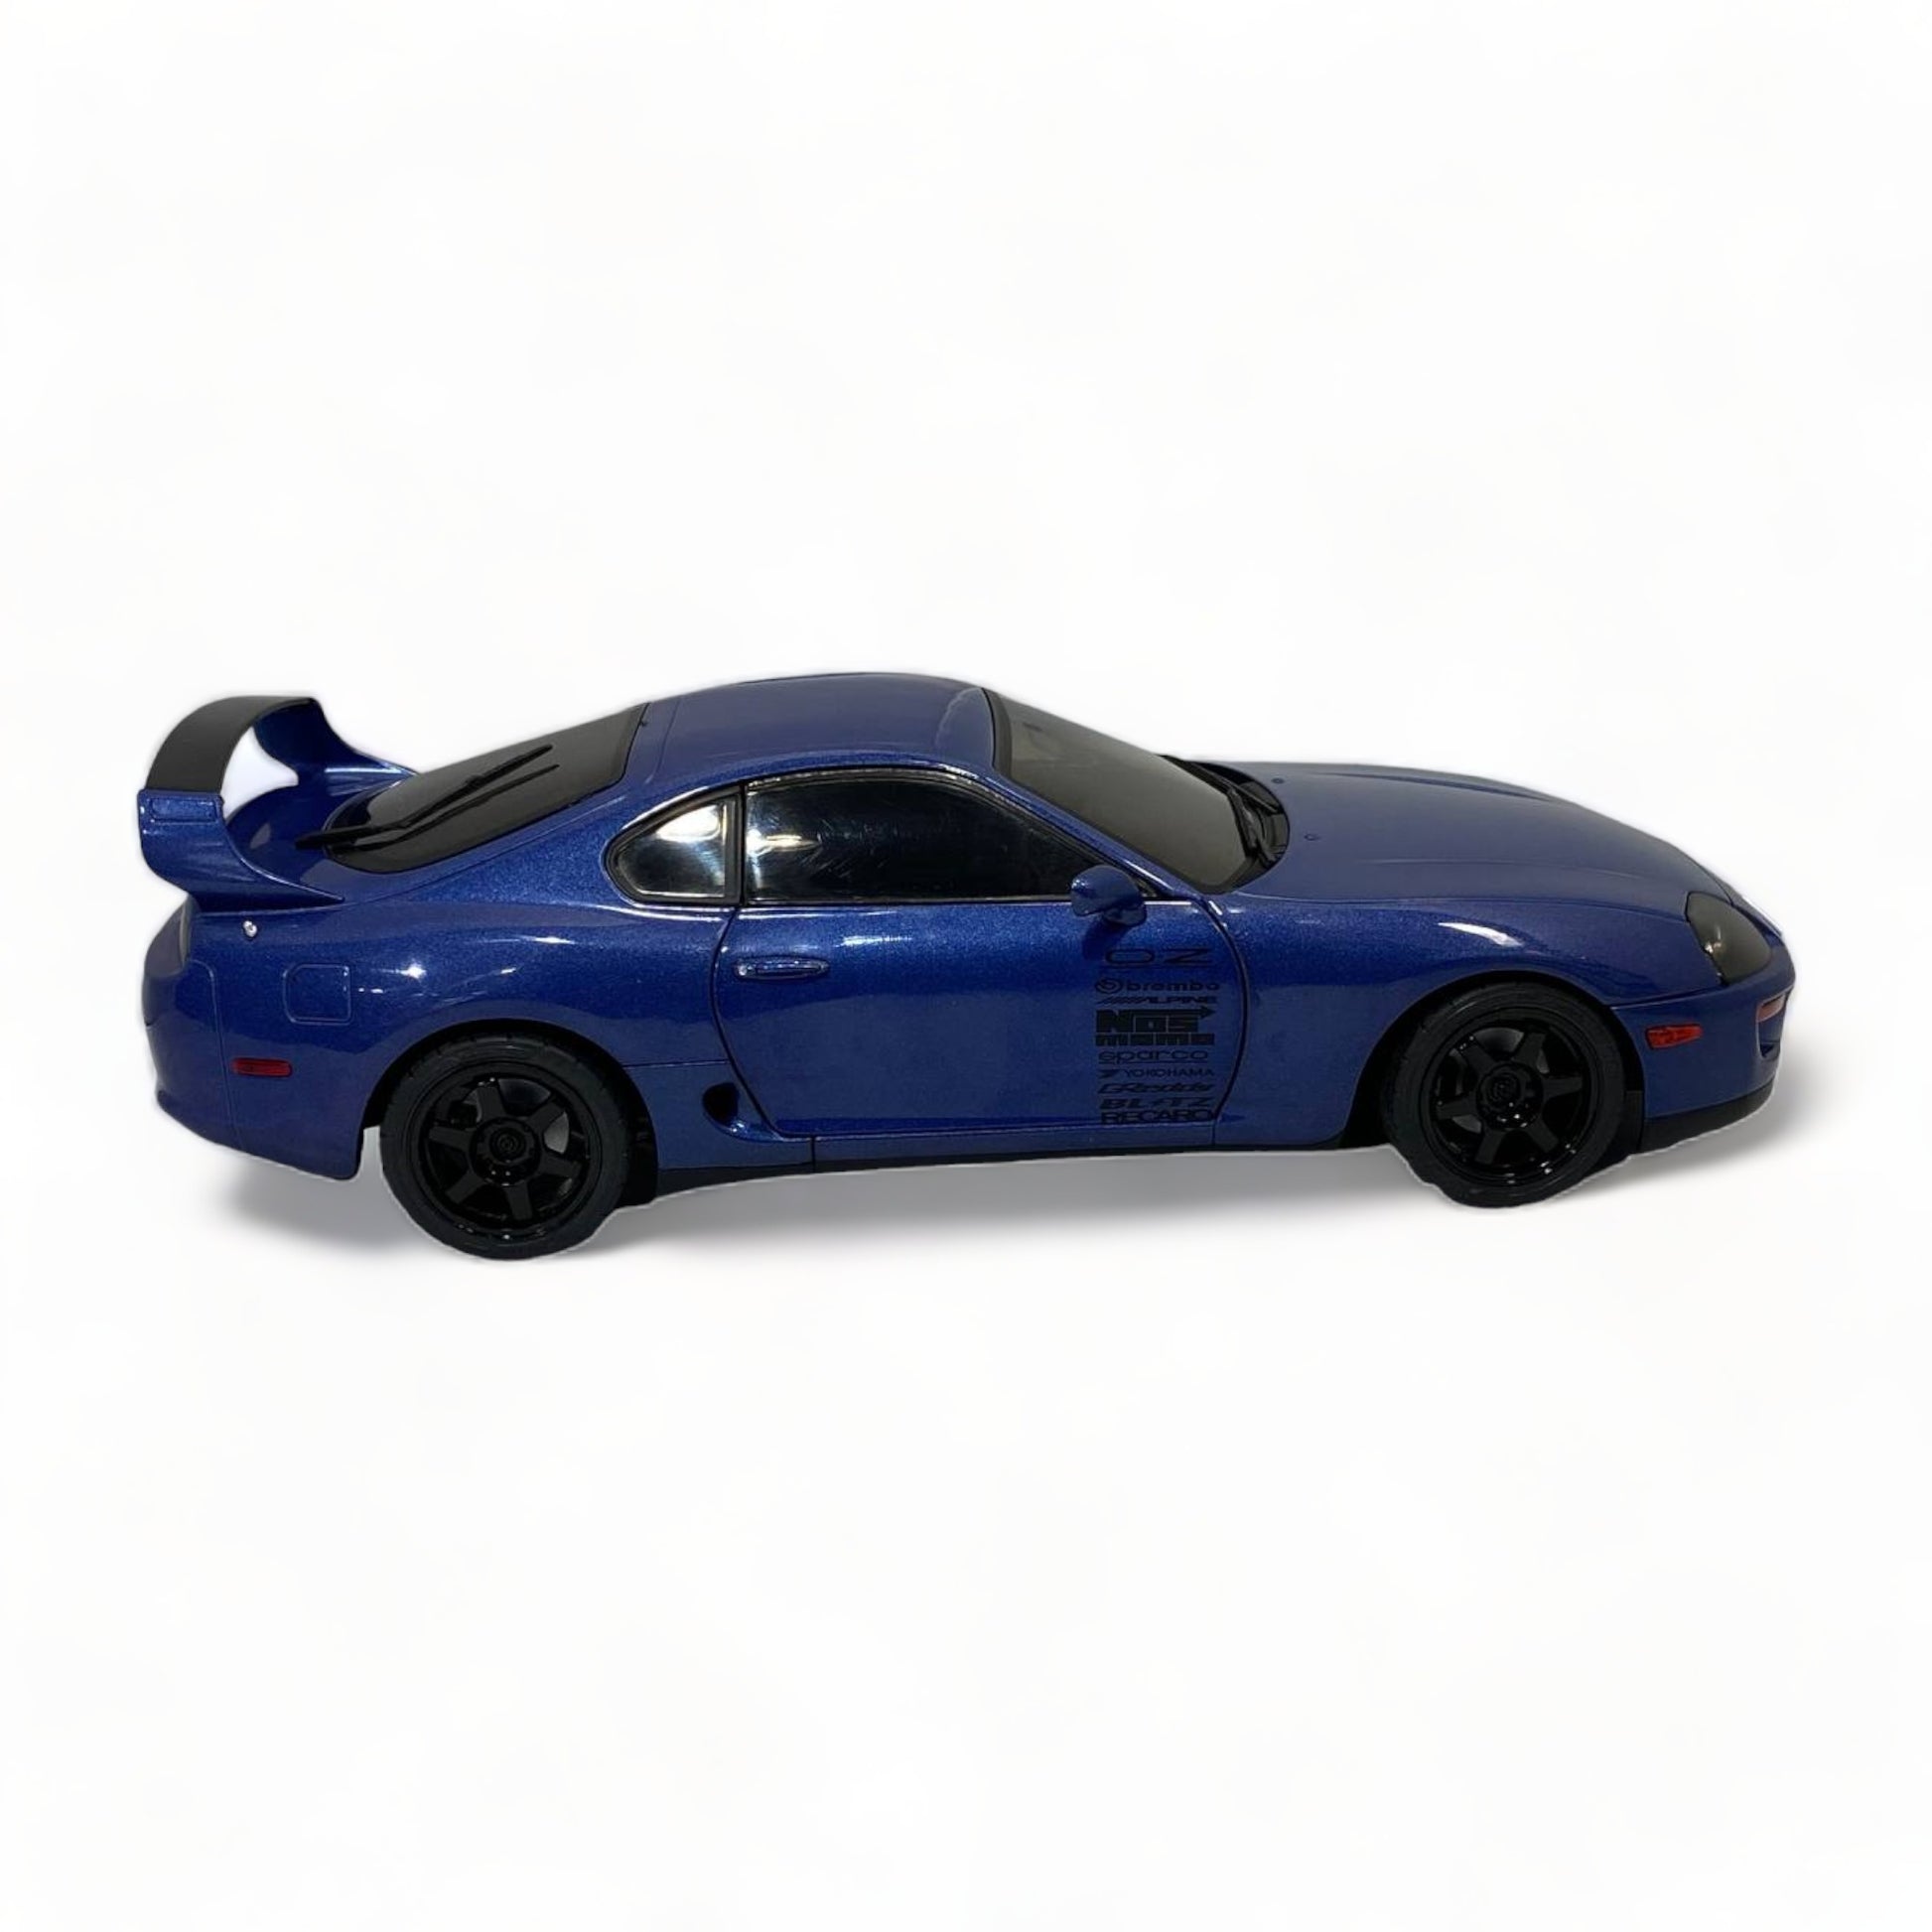 1/18 Diecast Toyota Supra MK4 Dark Blue by Solido Miniature Model Car|Sold in Dturman.com Dubai UAE.